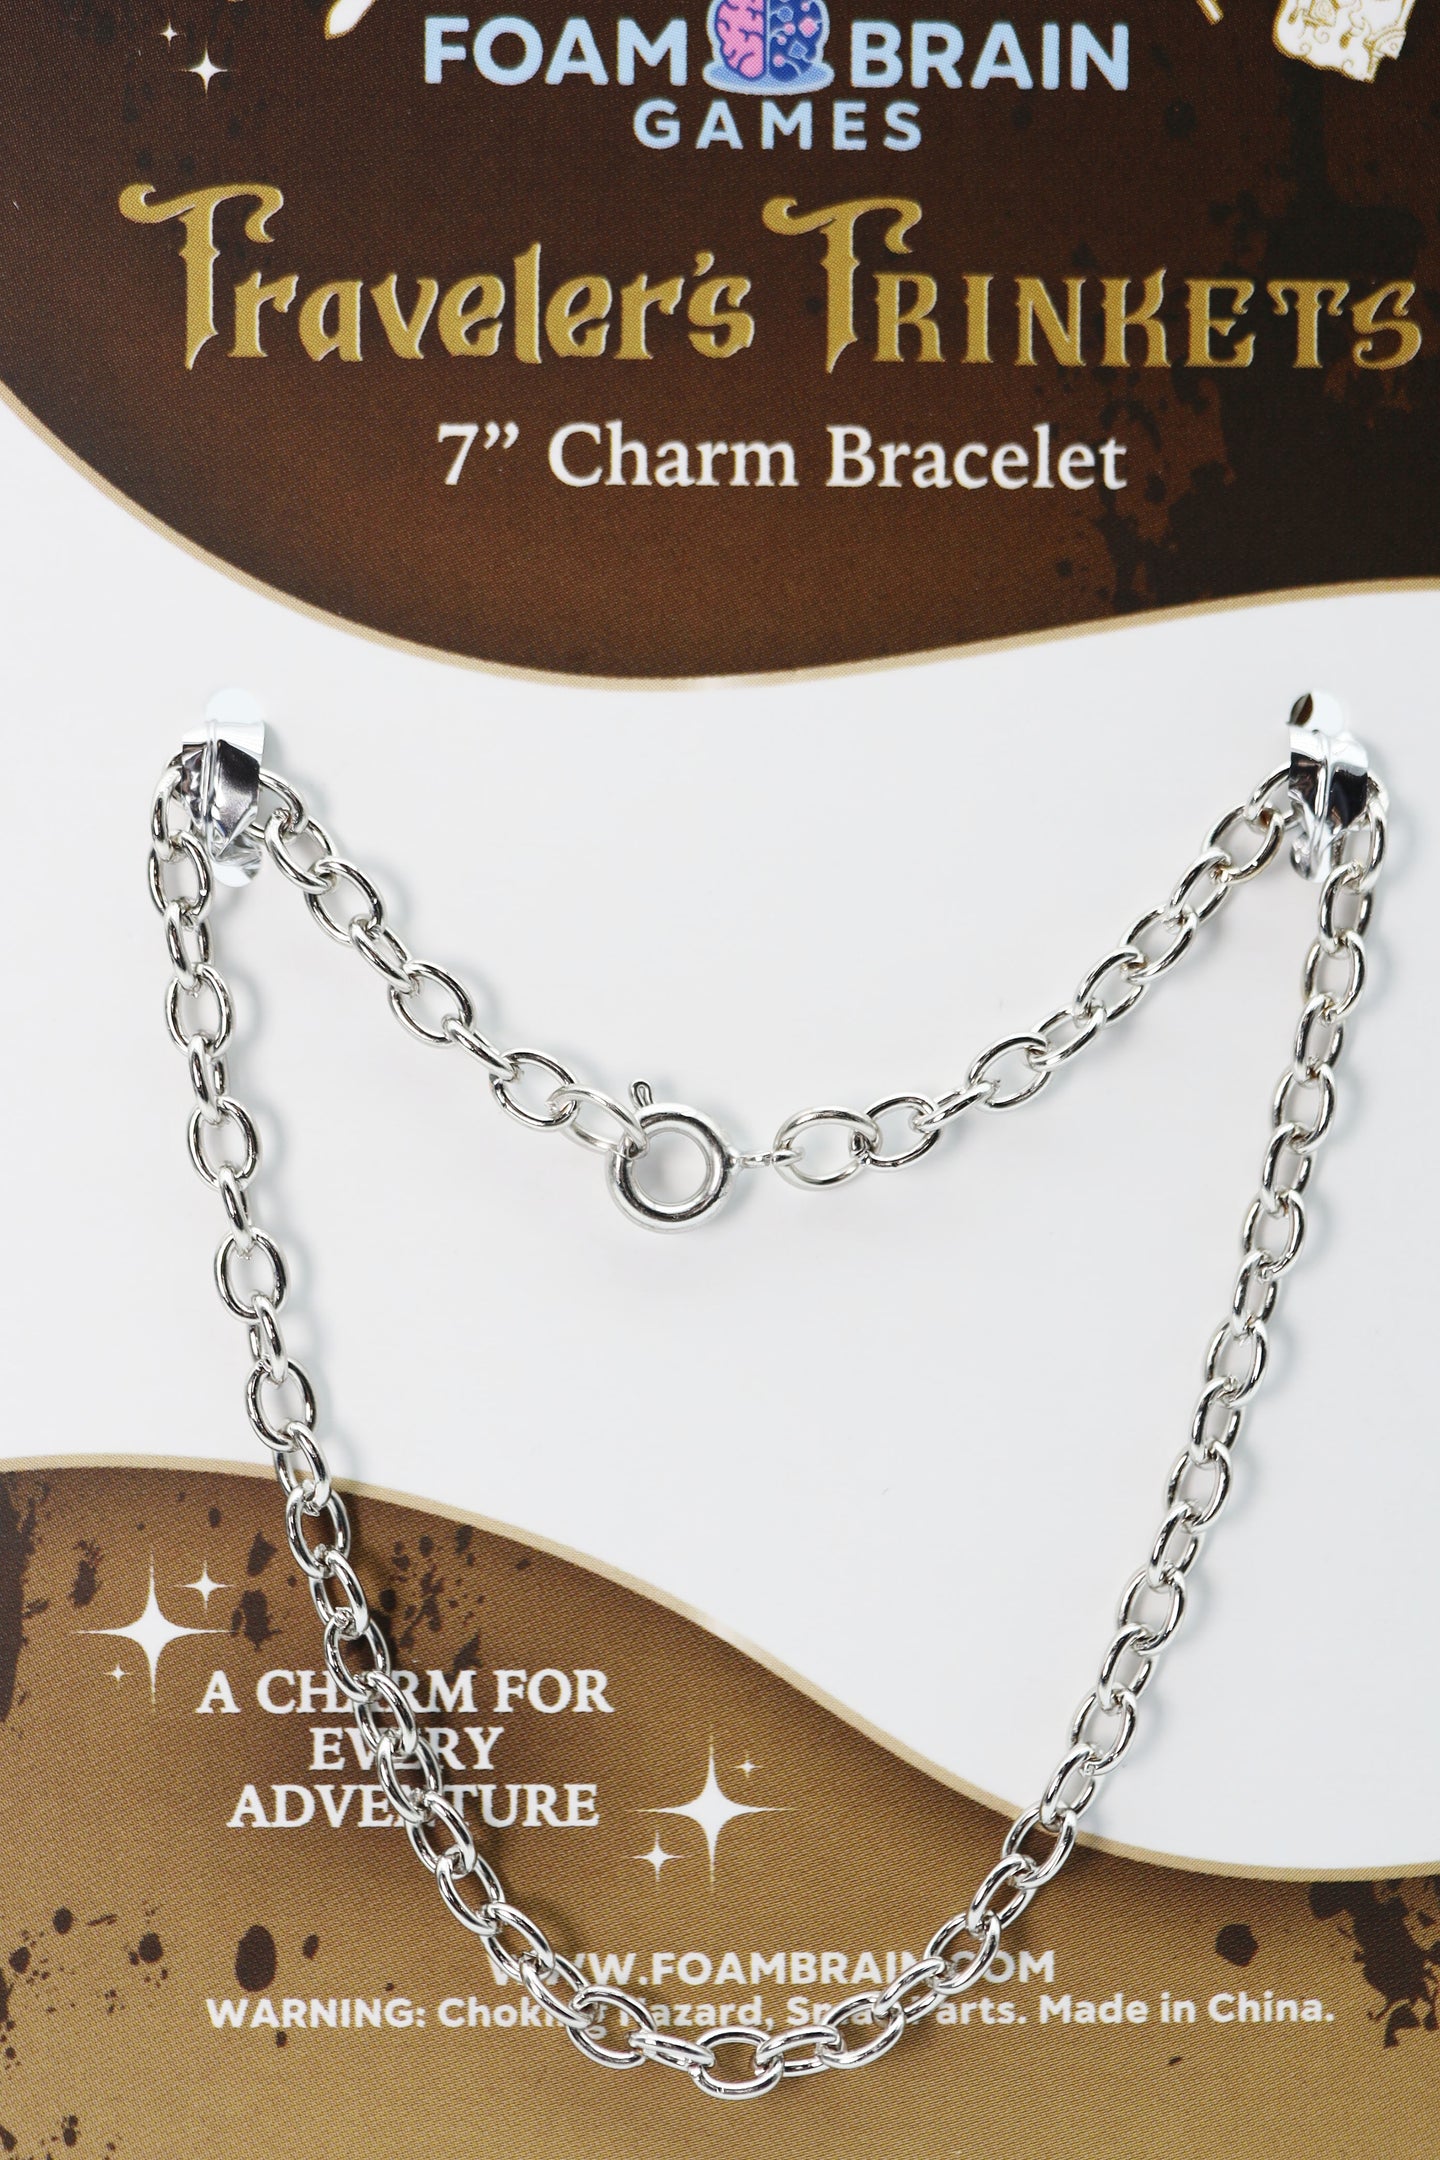 Traveler's Trinkets: 7" Charm Bracelet